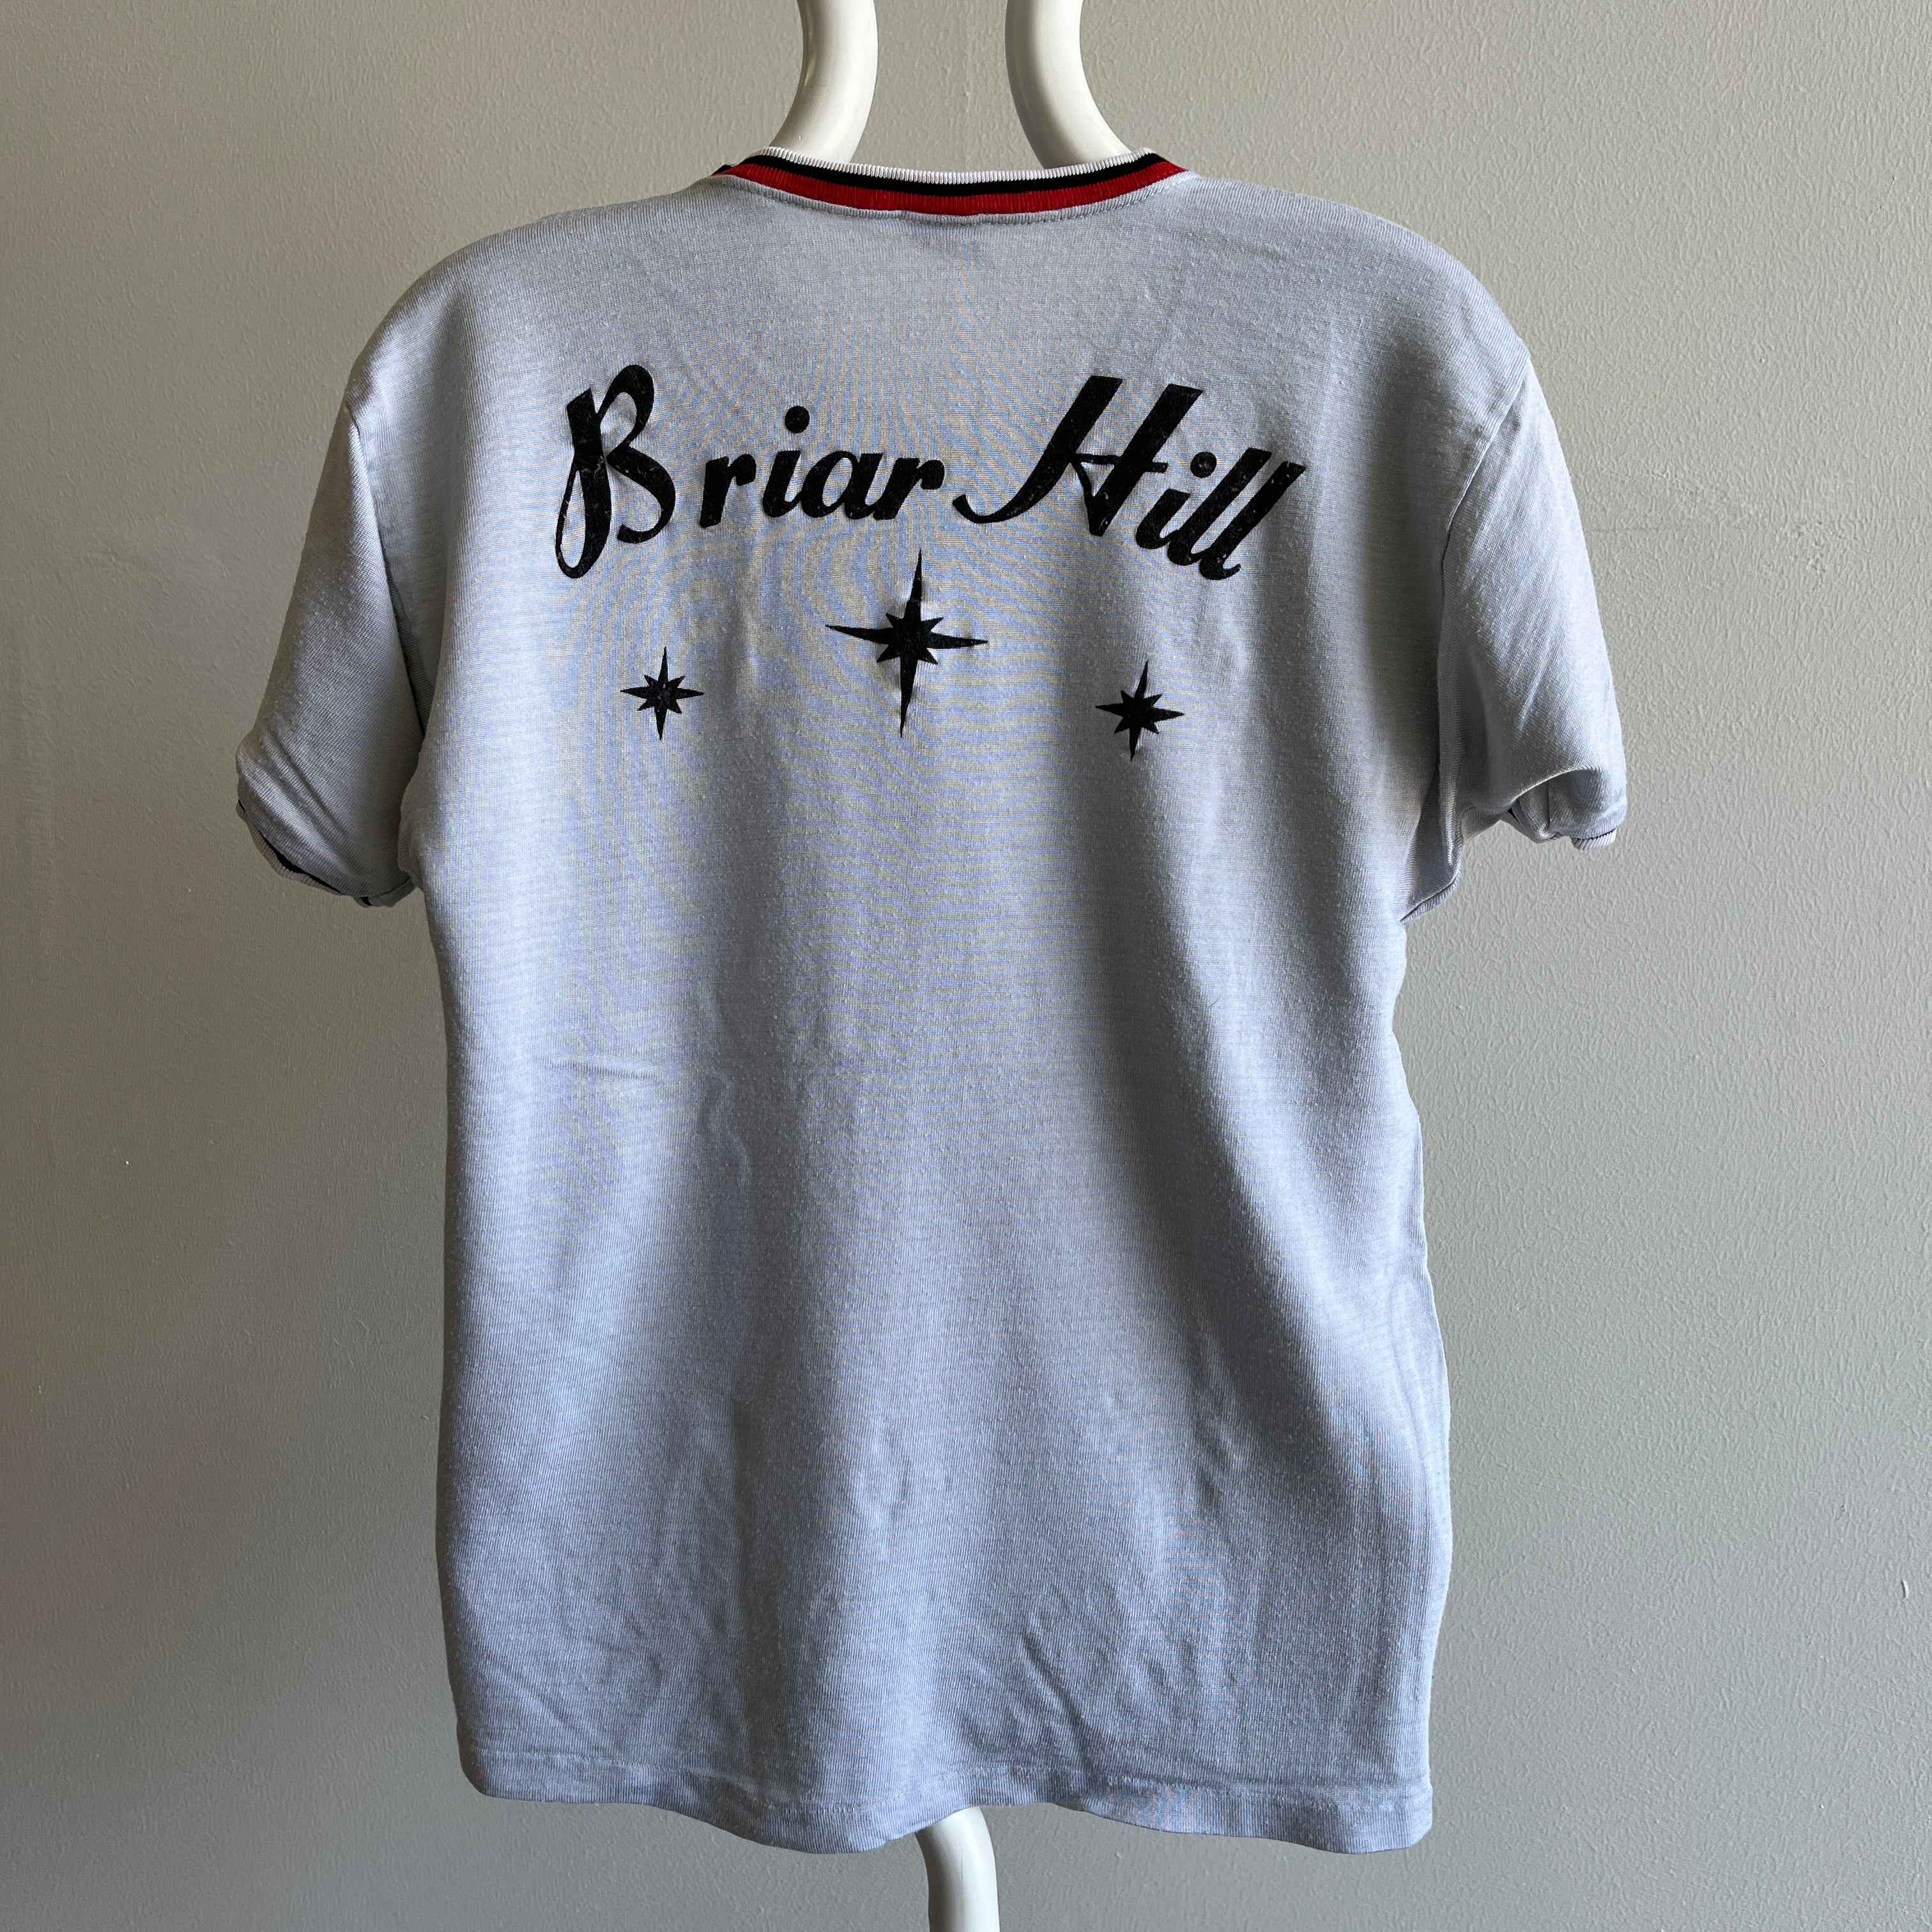 GG 1960/70s Briar Hill Nylon Ring T-Shirt by Mason